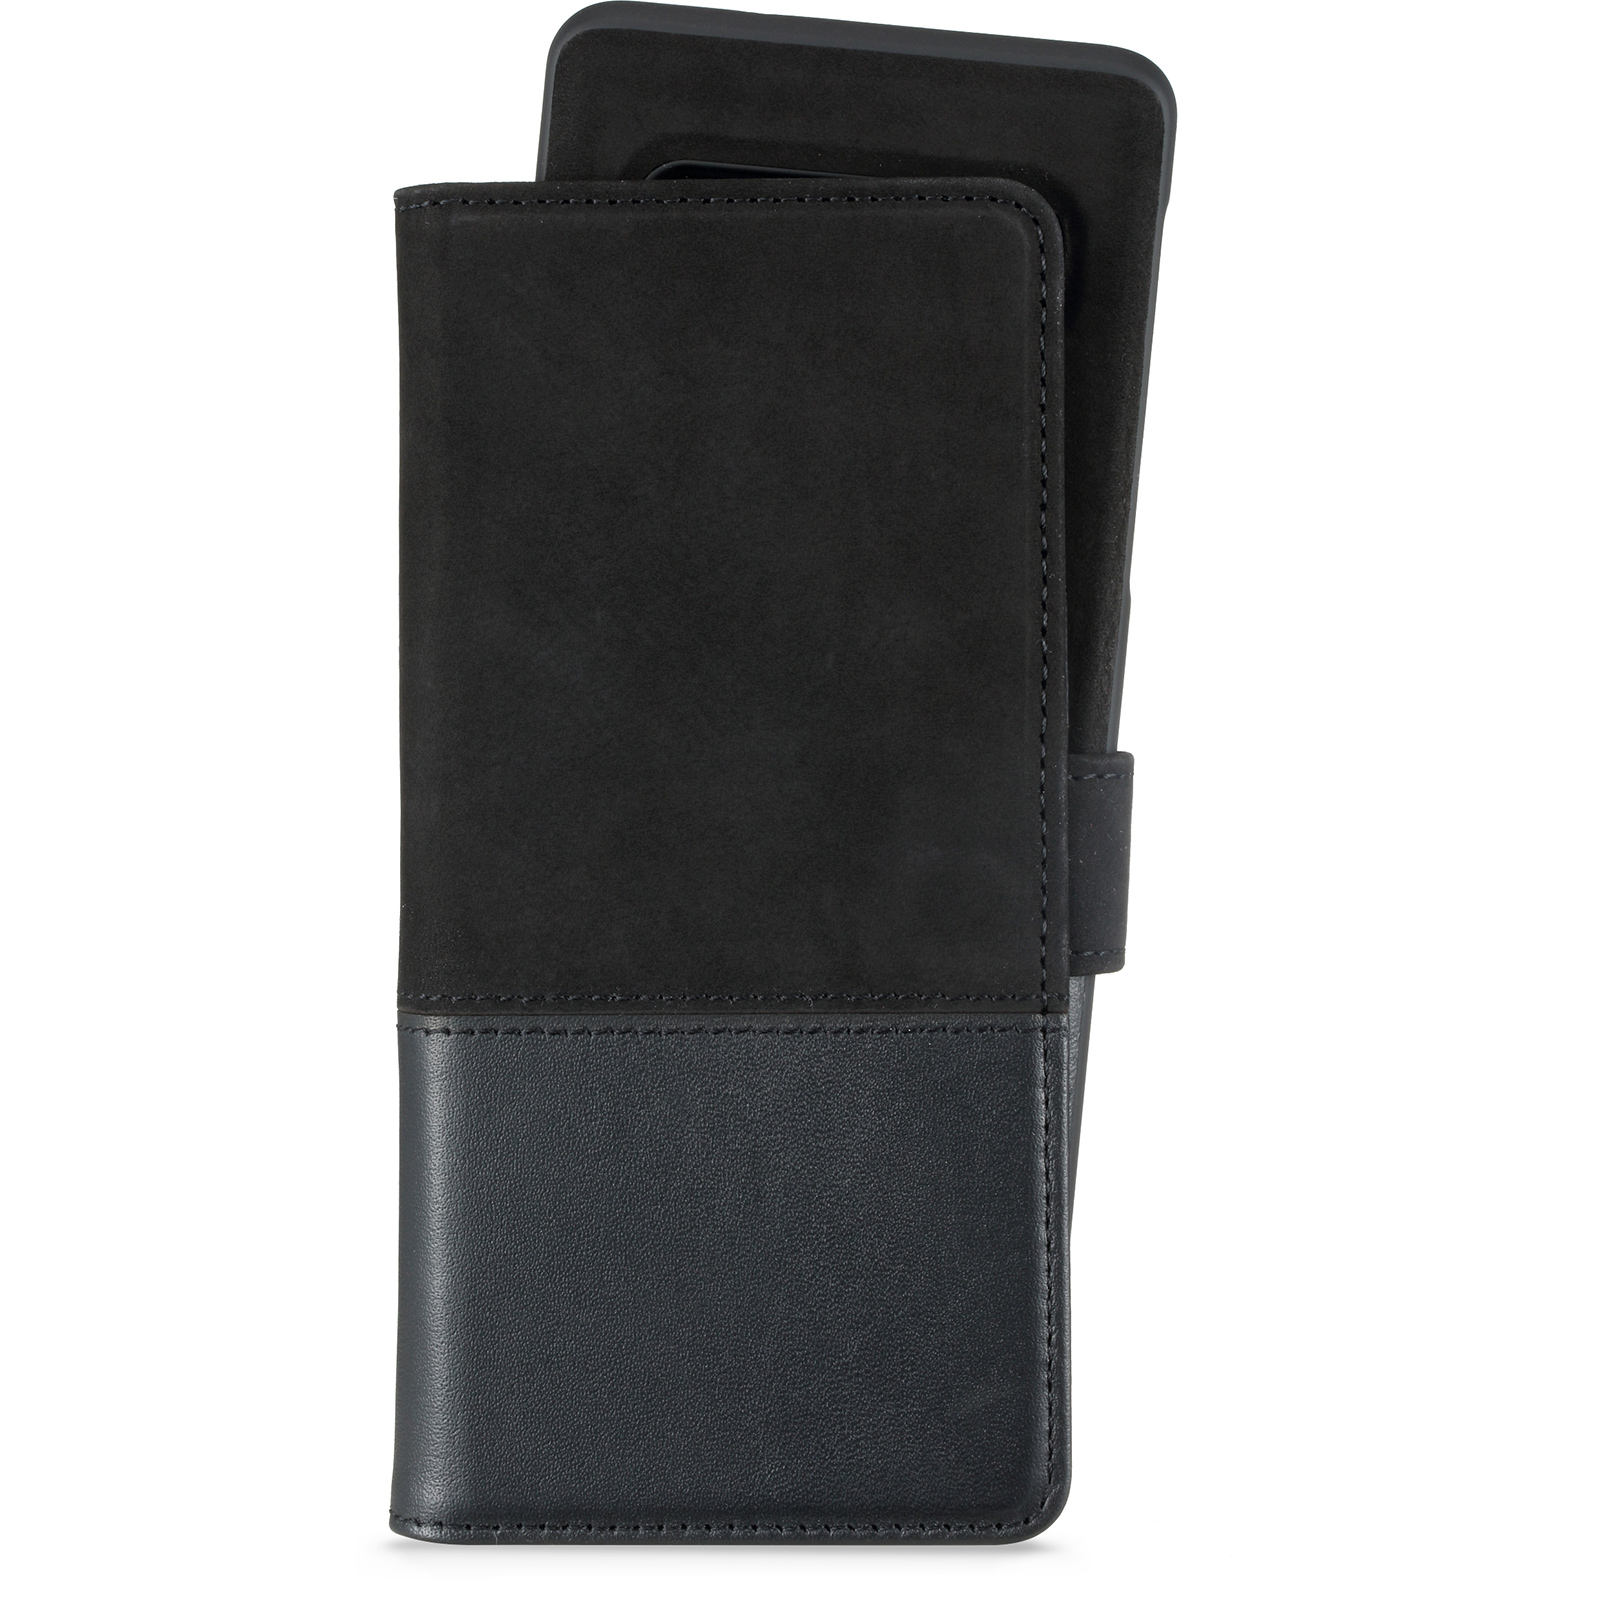 Samsung Galaxy S10, selected wallet magntique cuir/suede, noir